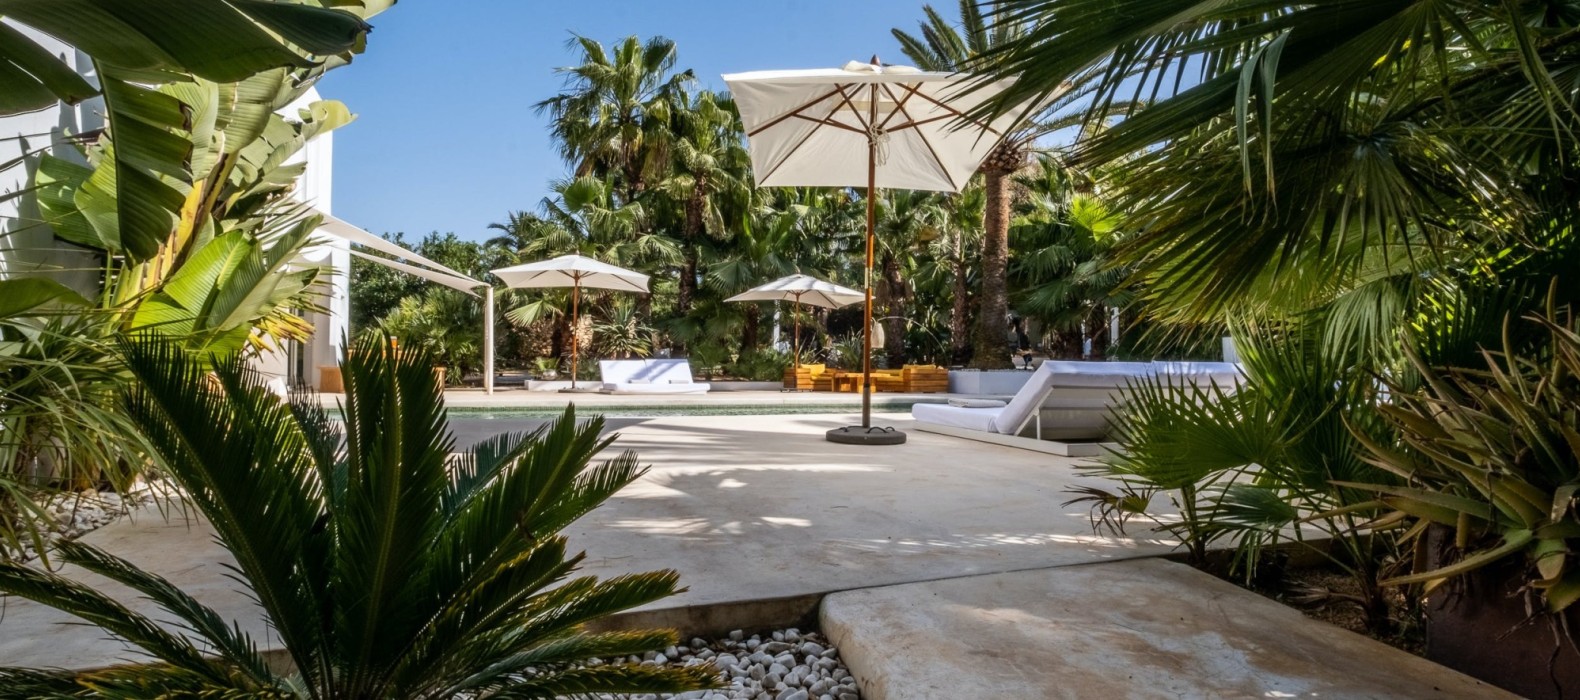 Exterior area of Villa Savant in Ibiza